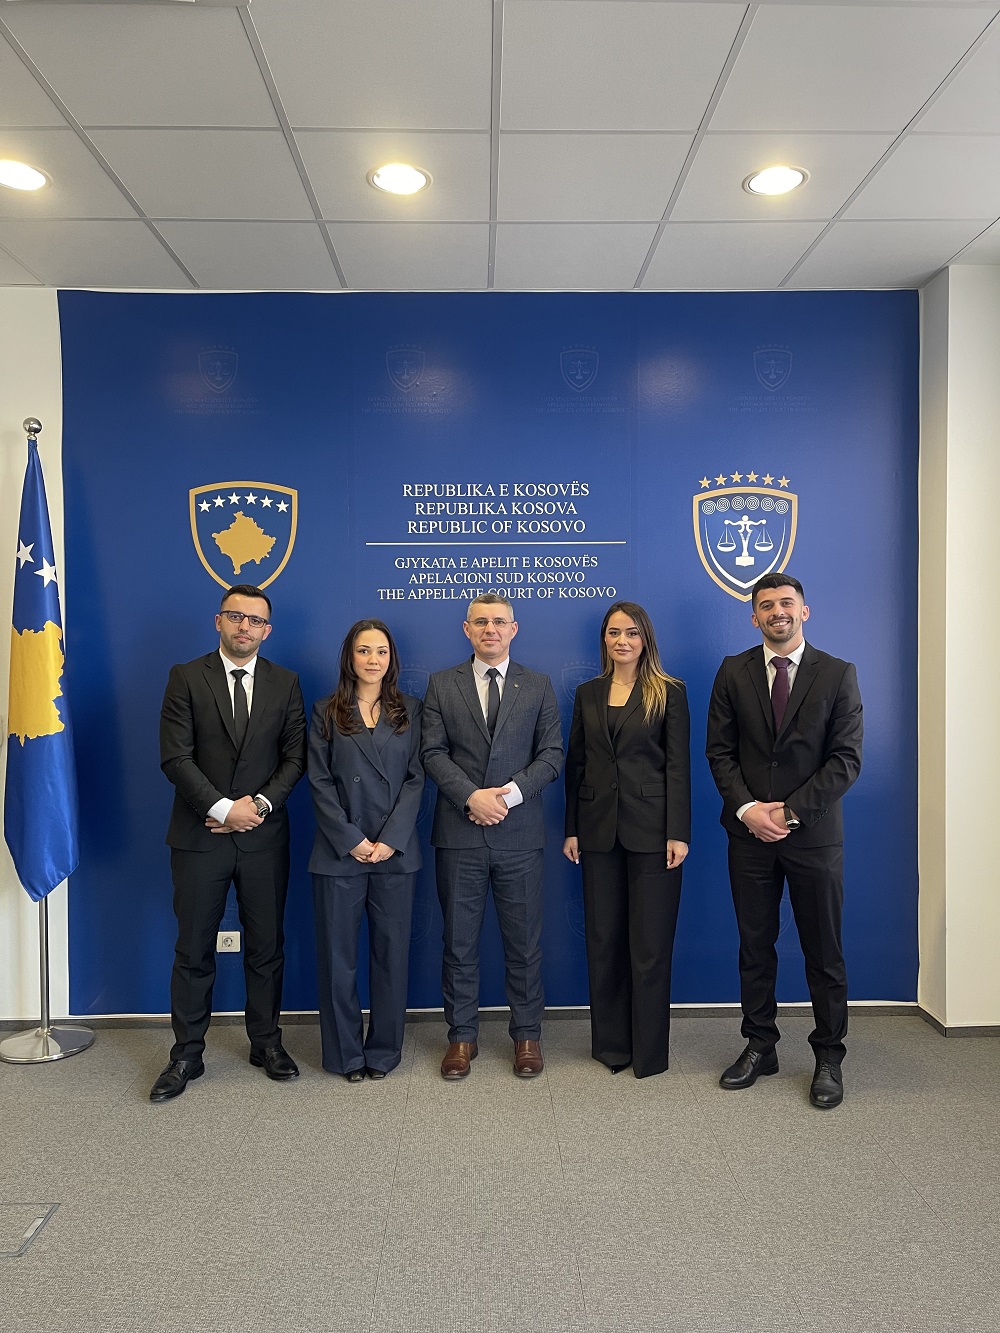 4 Bashkëpunëtor Profesional nga Gjykata e Apelit, sot janë dekretuar Gjyqtar në Gjykatat Themelore të Republikës së Kosovës